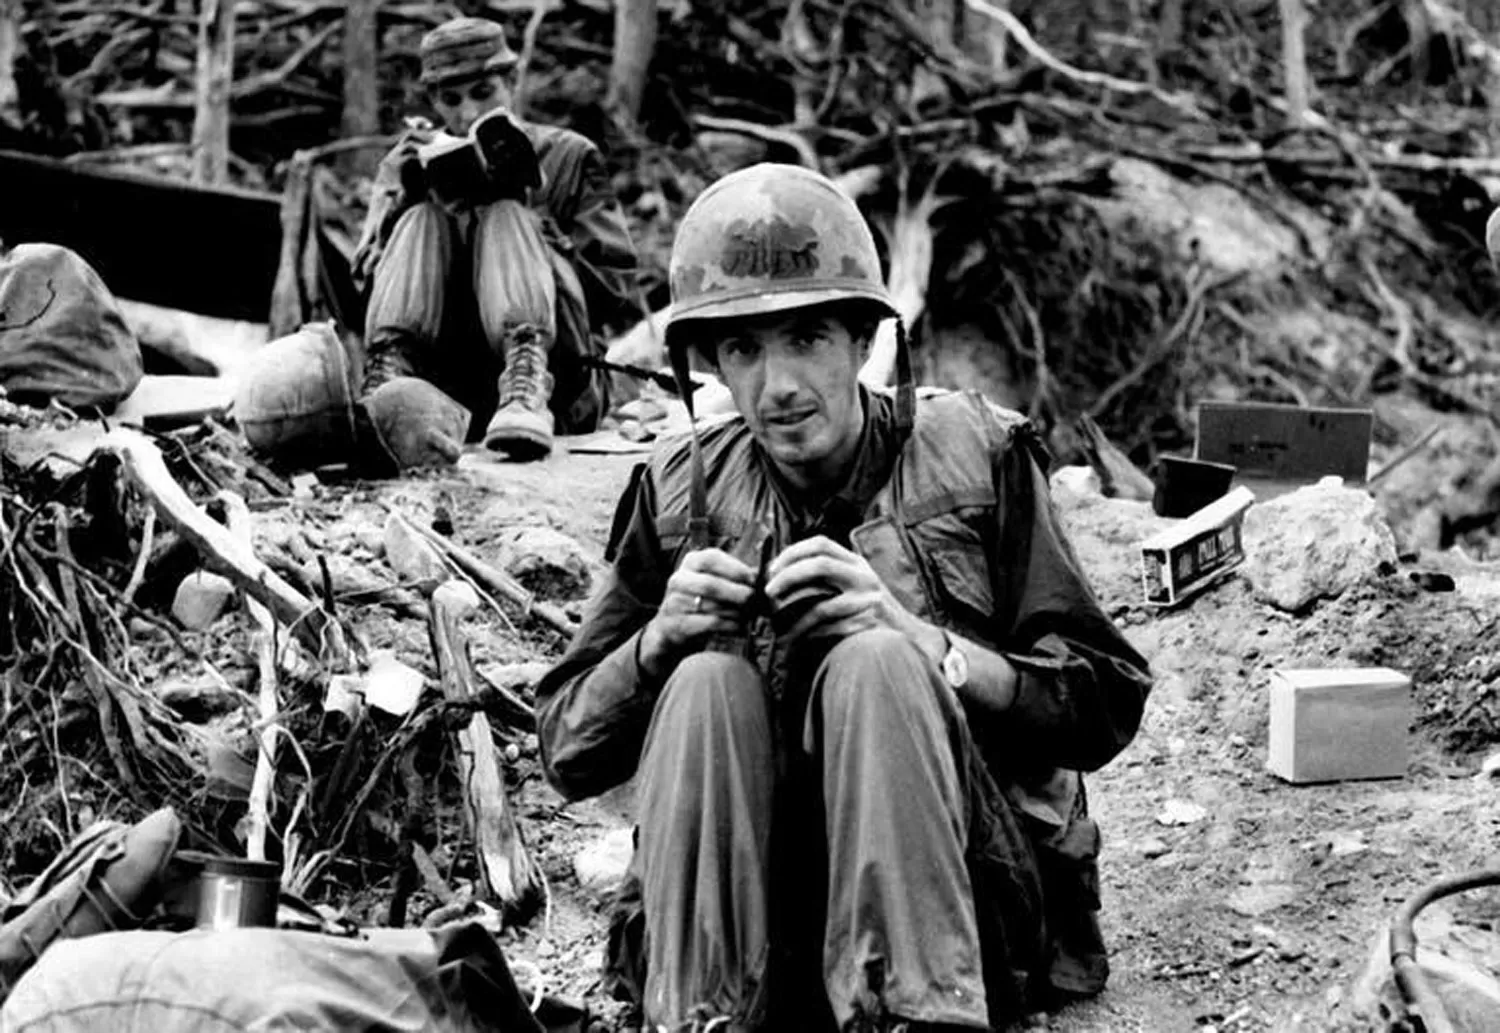 EN PLENA GUERRA. Ignacio Ezcurra, a fines de los 60’, durante su cobertura en Vietnam. CRÉDITO: Diario LA NACIÓN